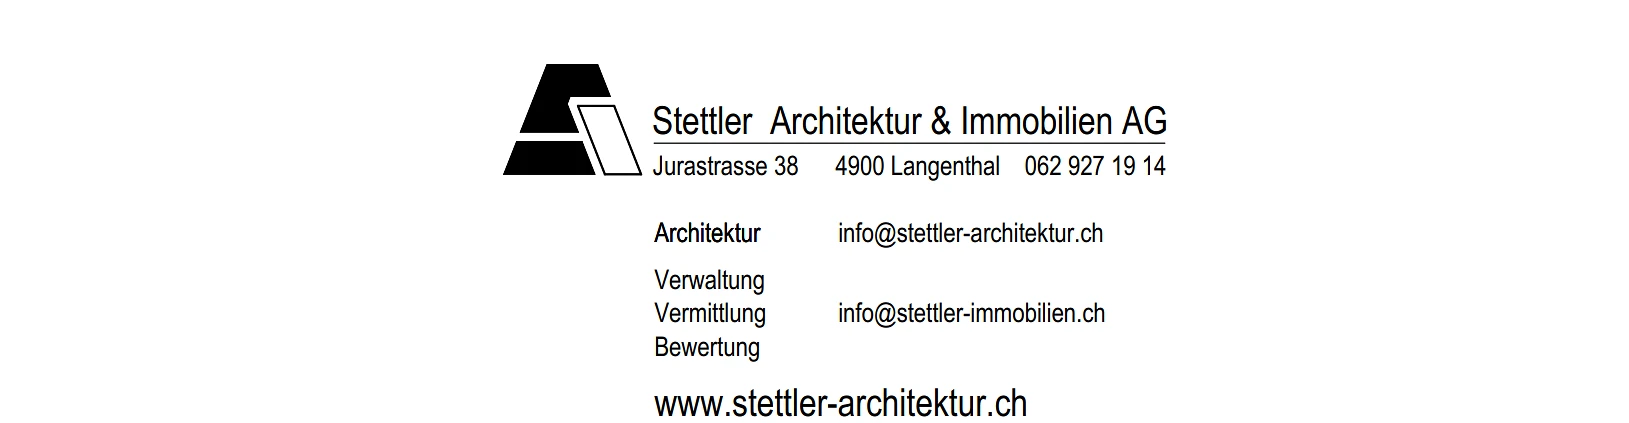 Stettler Architektur